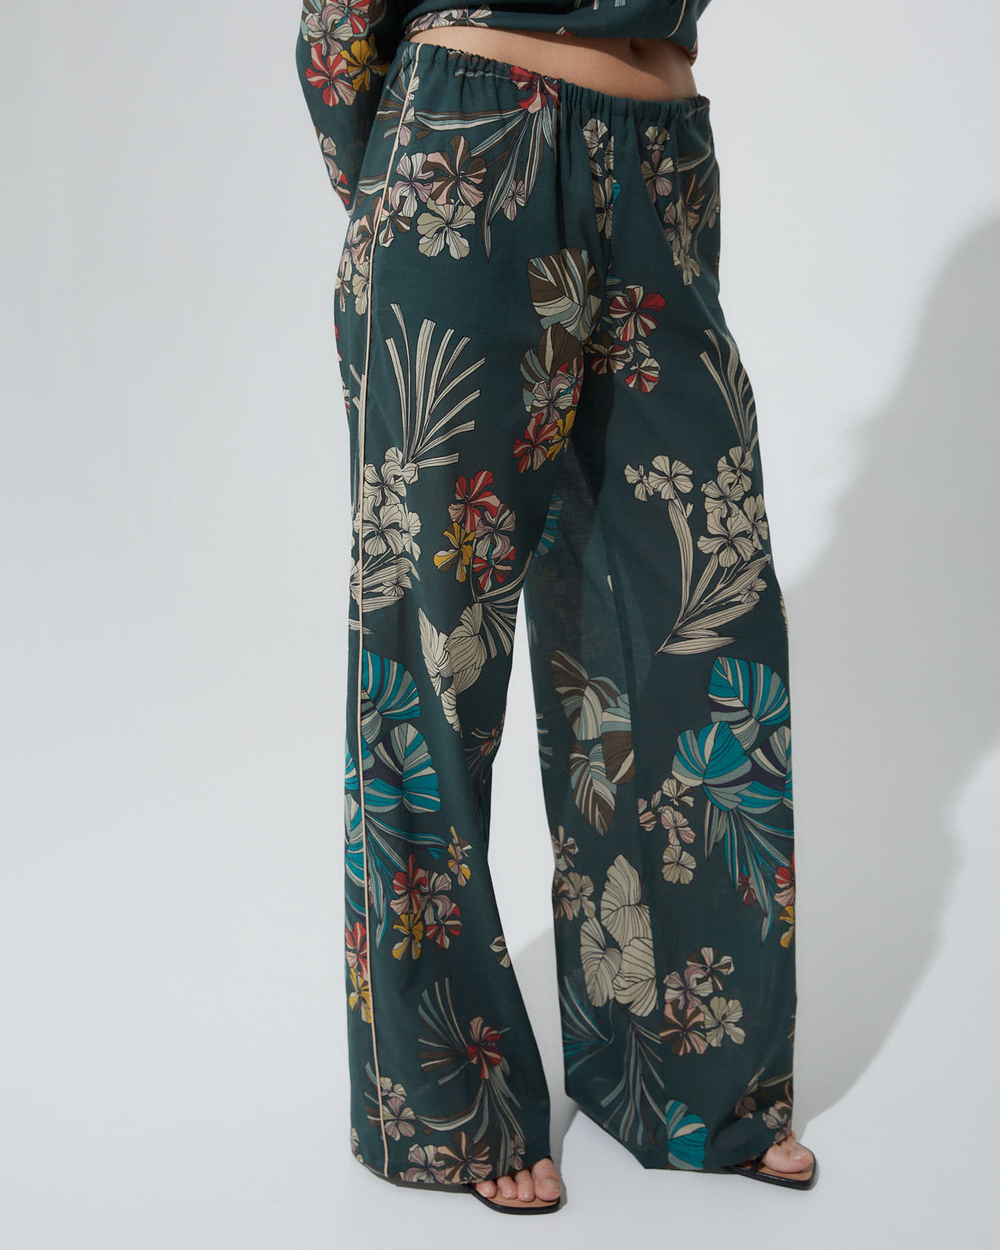 Комплект: рубашка и брюки с кантом из хлопка Макс Мара цветы зеленый